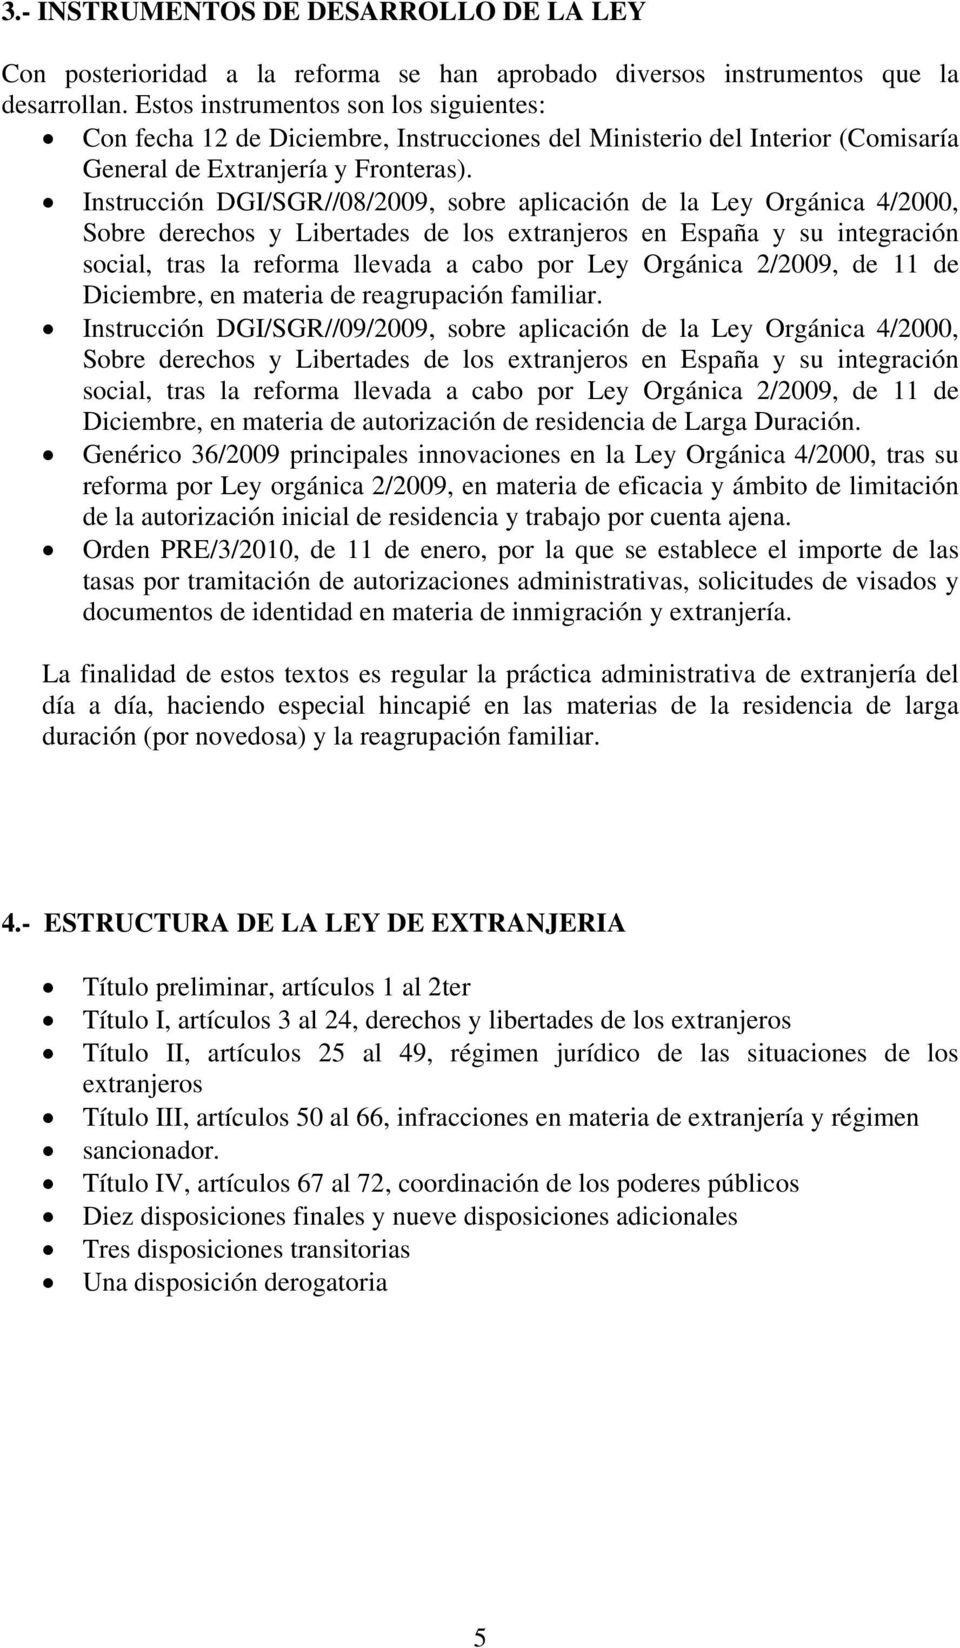 Instrucción DGI/SGR//08/2009, sobre aplicación de la Ley Orgánica 4/2000, Sobre derechos y Libertades de los extranjeros en España y su integración social, tras la reforma llevada a cabo por Ley